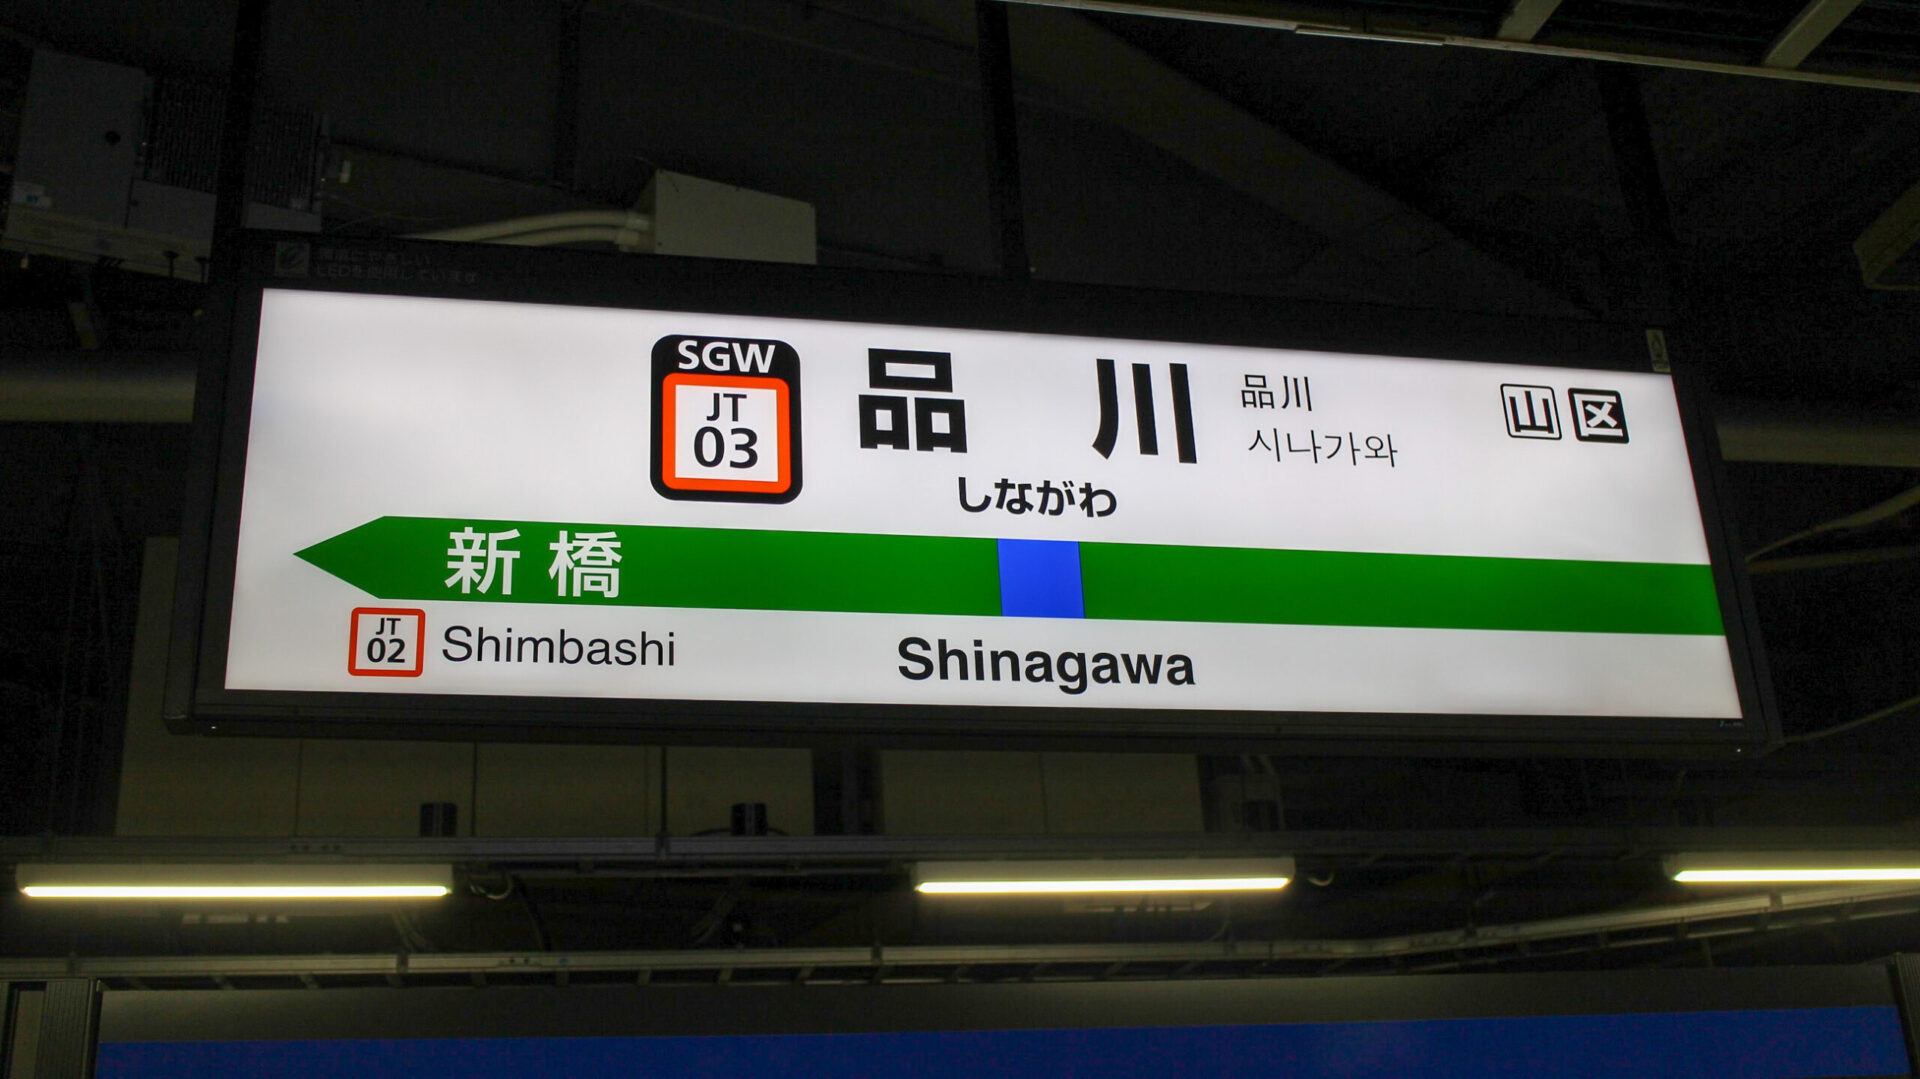 品川駅駅名標